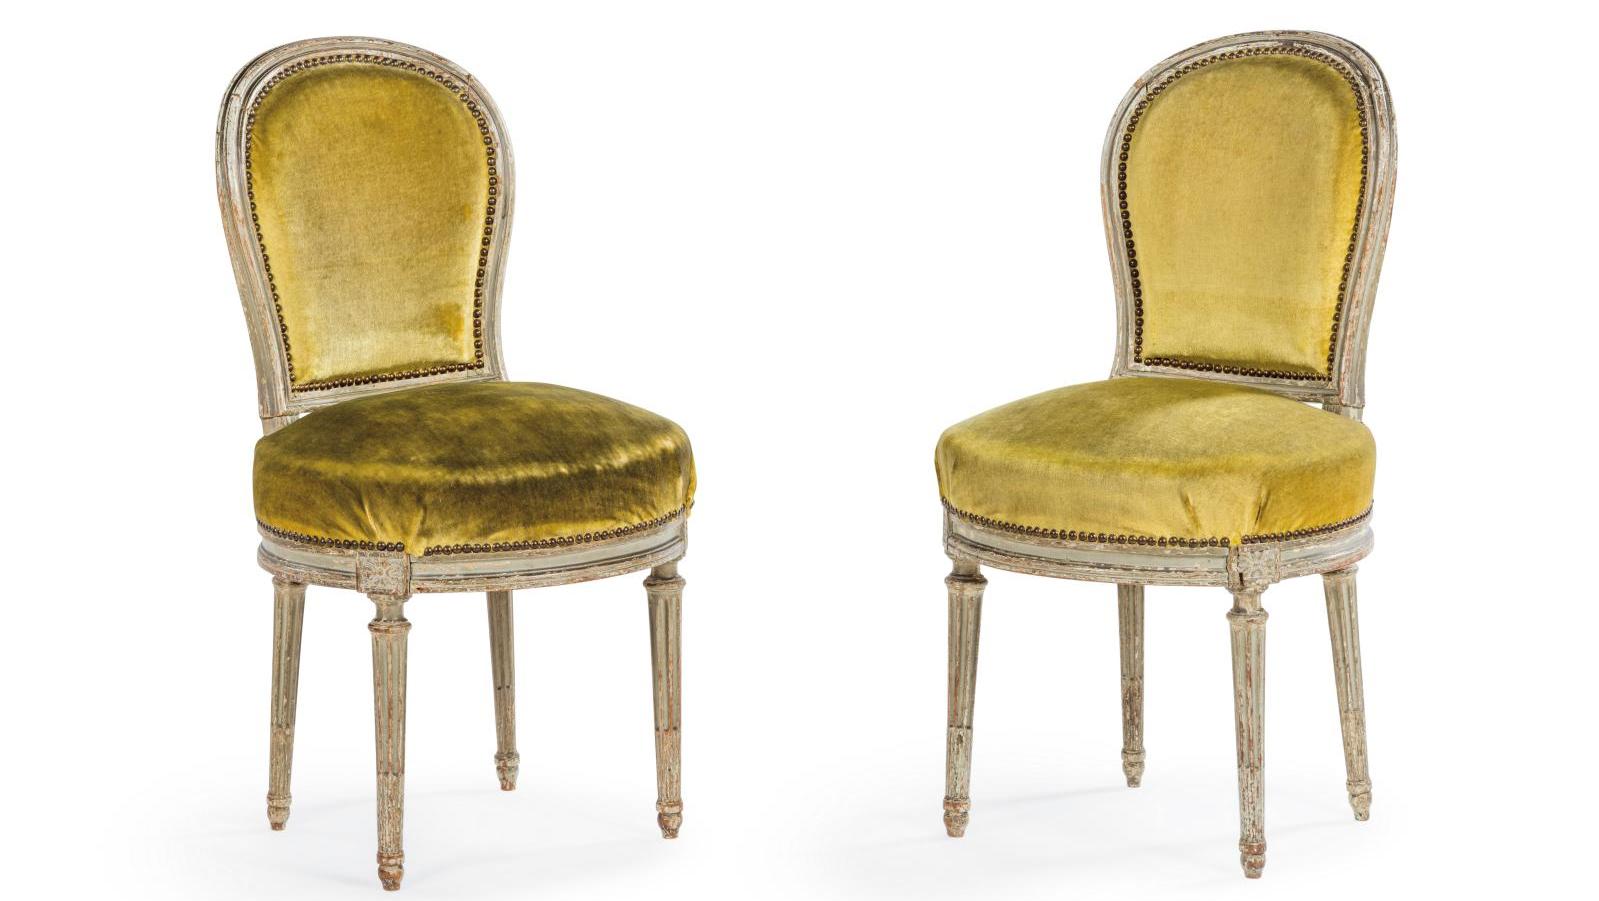 Georges Jacob (1730-1814), paire de chaises en hêtre mouluré et laqué gris, le dossier... Georges Jacob de retour à Trianon